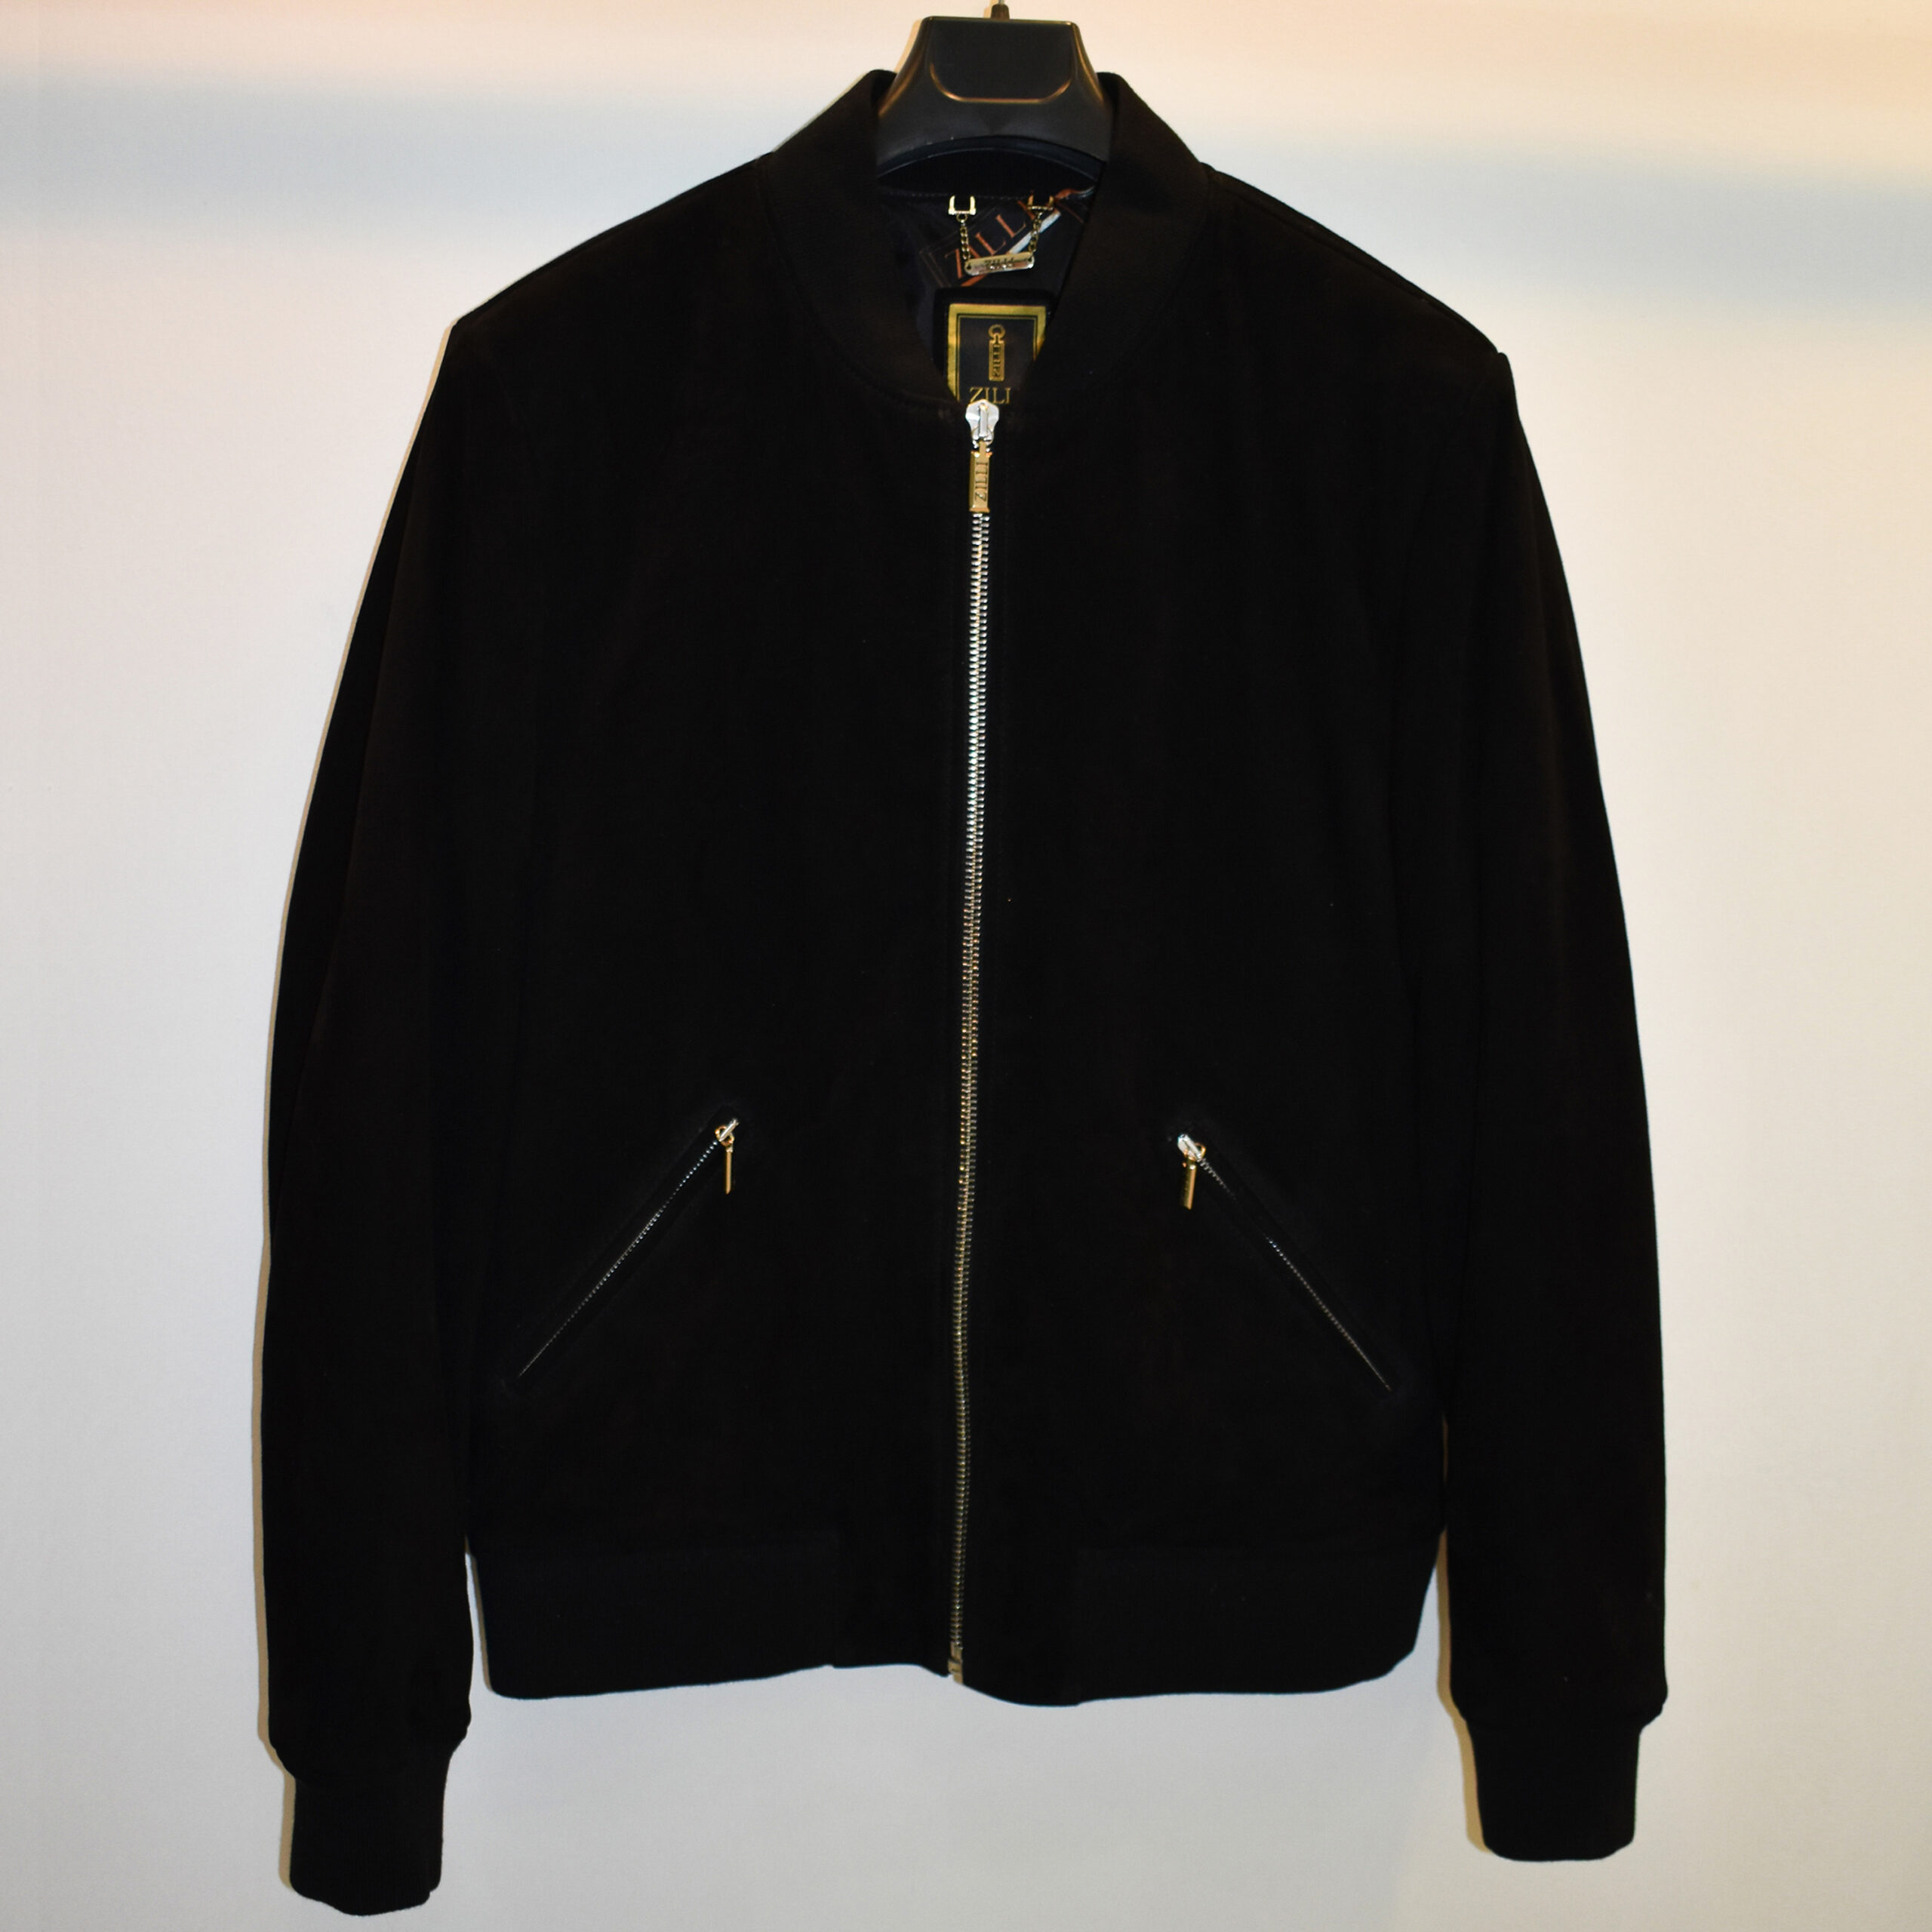 Black Suede Bomber Jacket - Leather Guys: Luxury Leather Jackets